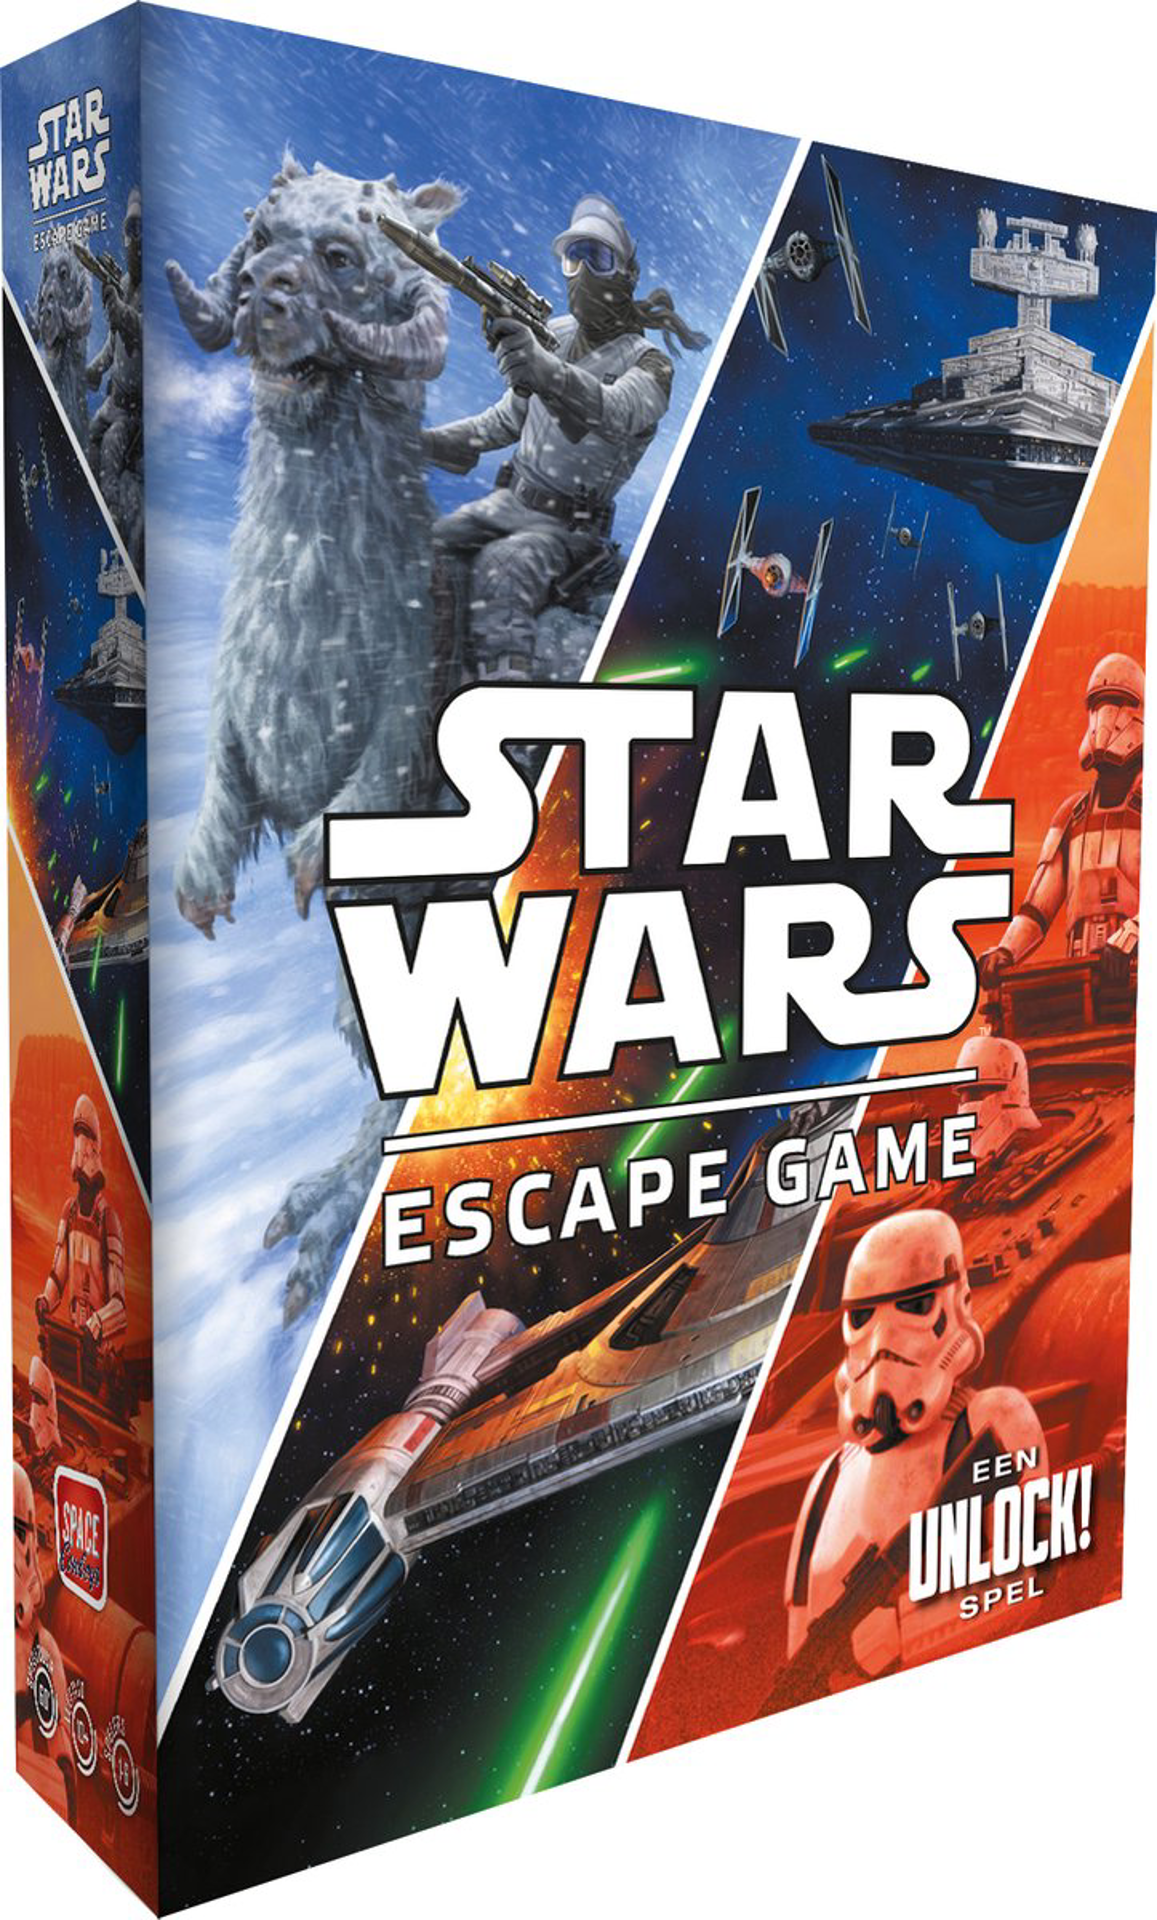 Star Wars: Escape Game - Een Unlock! Spel